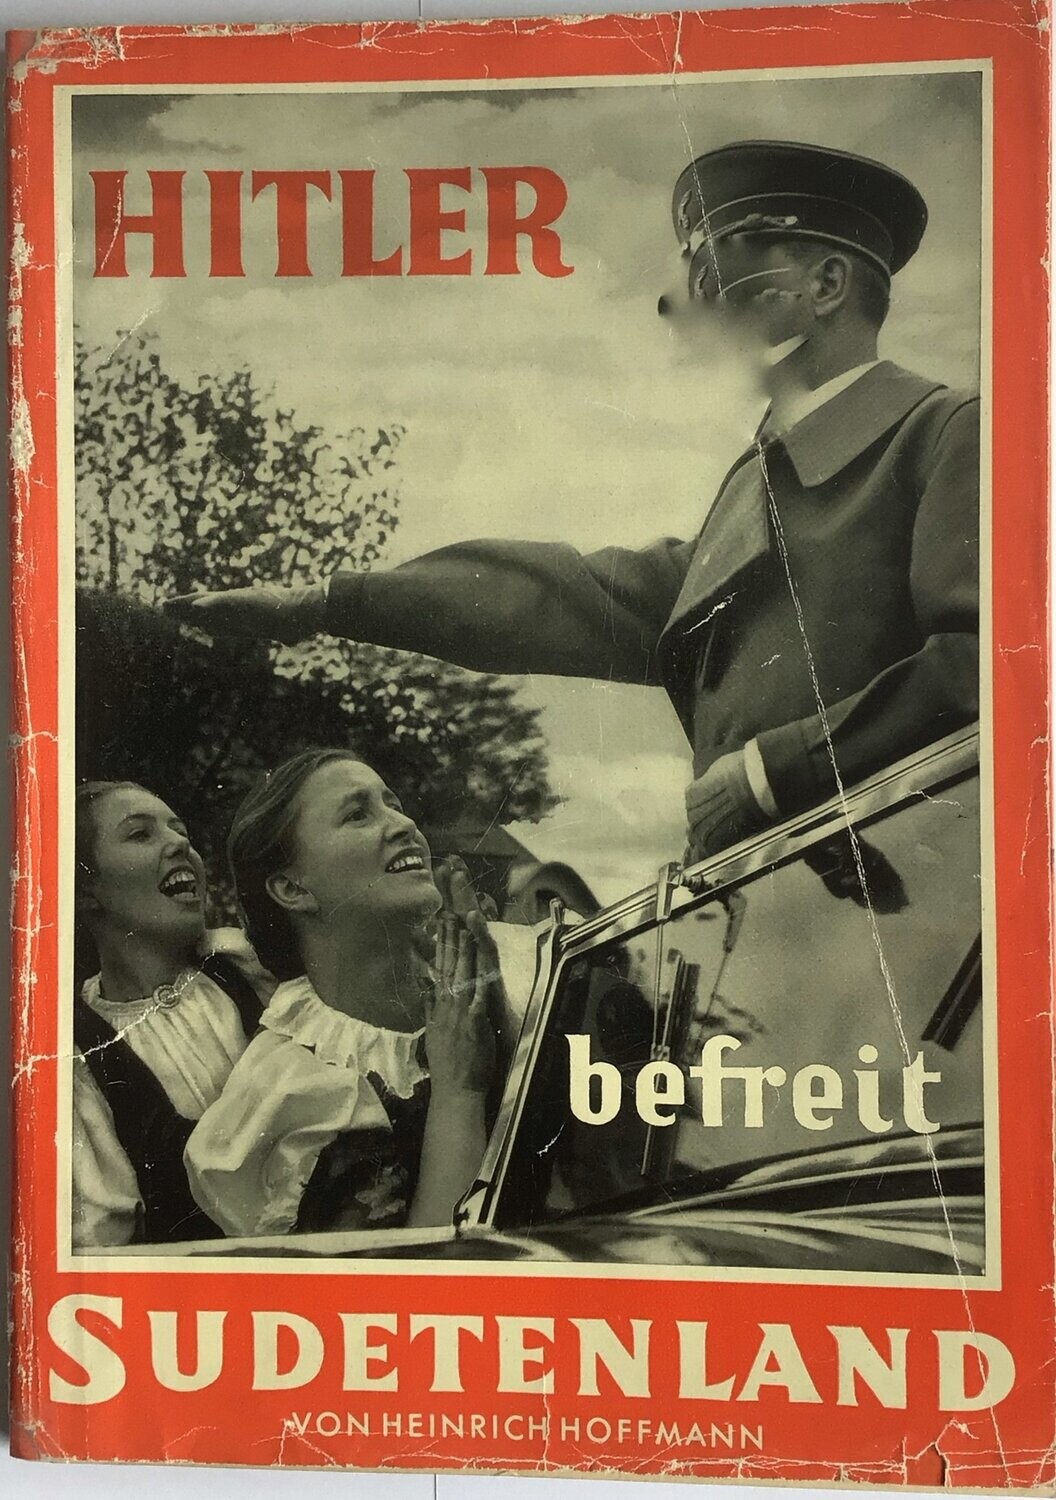 Hoffmann-Bildband: Hitler befreit Sudetenland - Broschierte Ausgabe aus 1938 (Auflage 151. - 160. Tausend) mit Original-Schutzumschlag